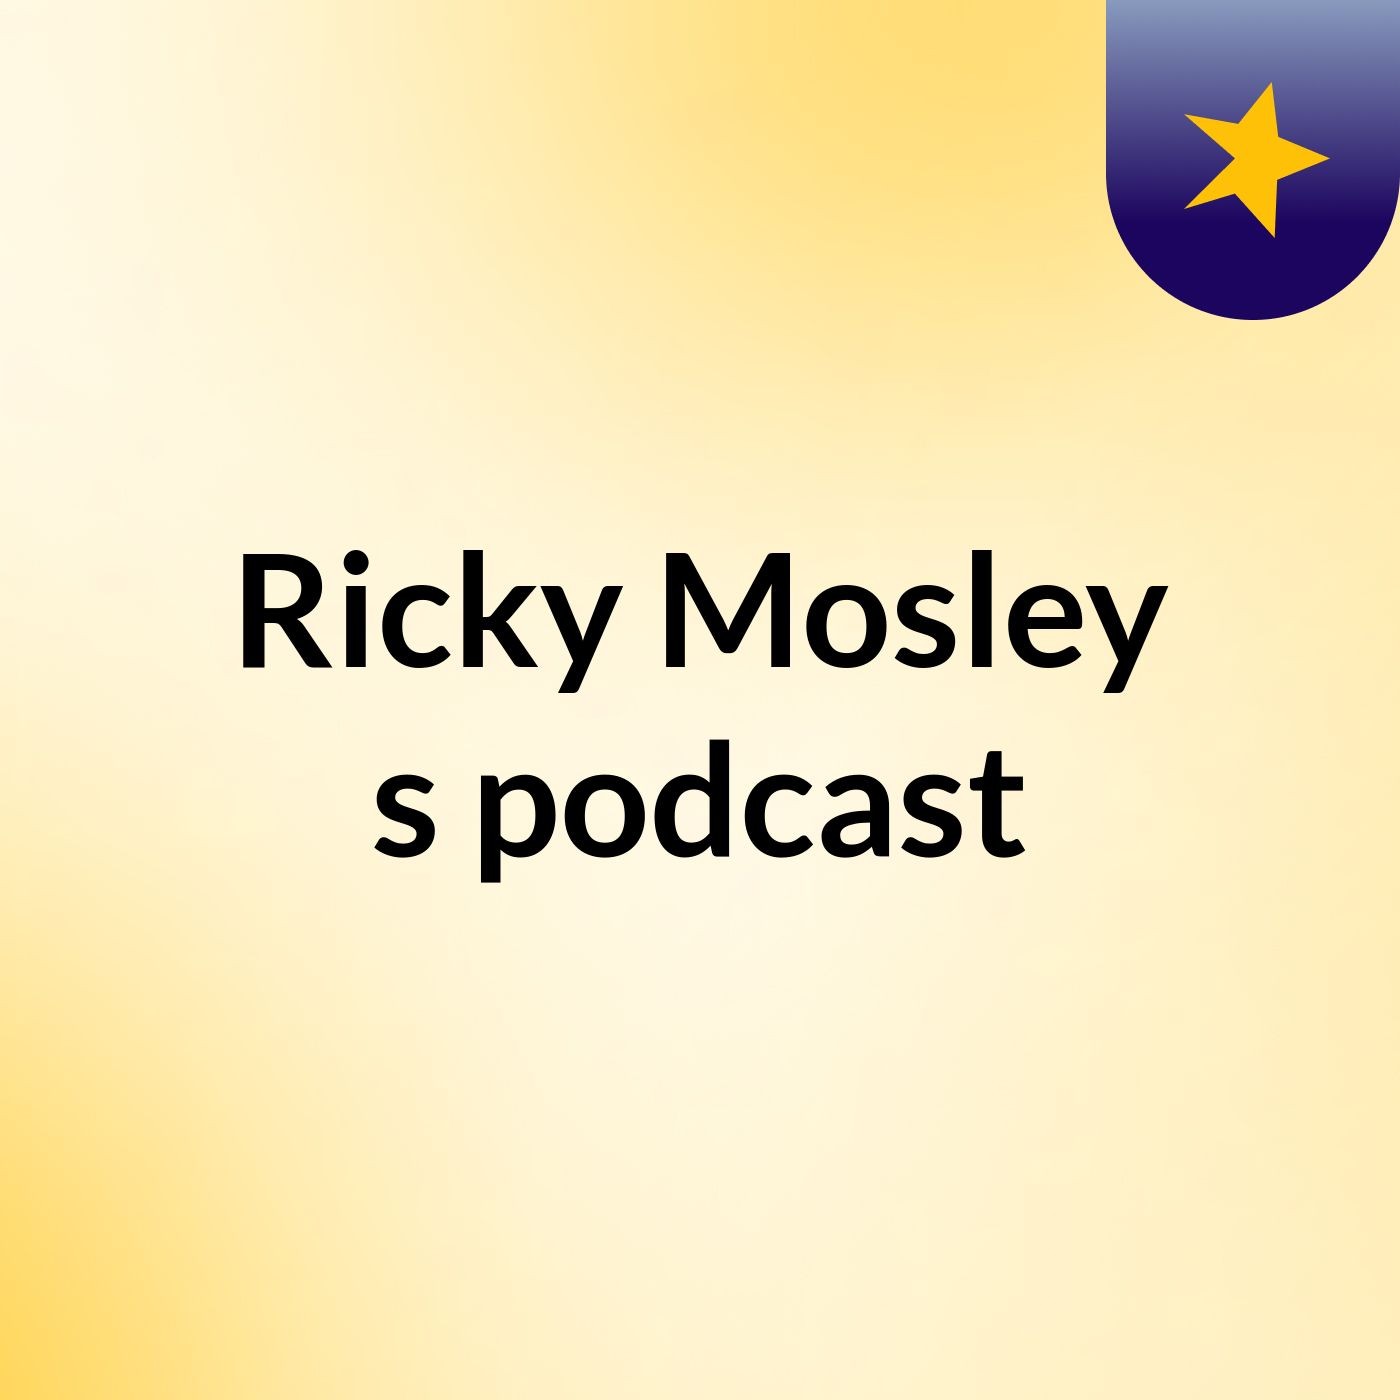 Ricky Mosley's podcast